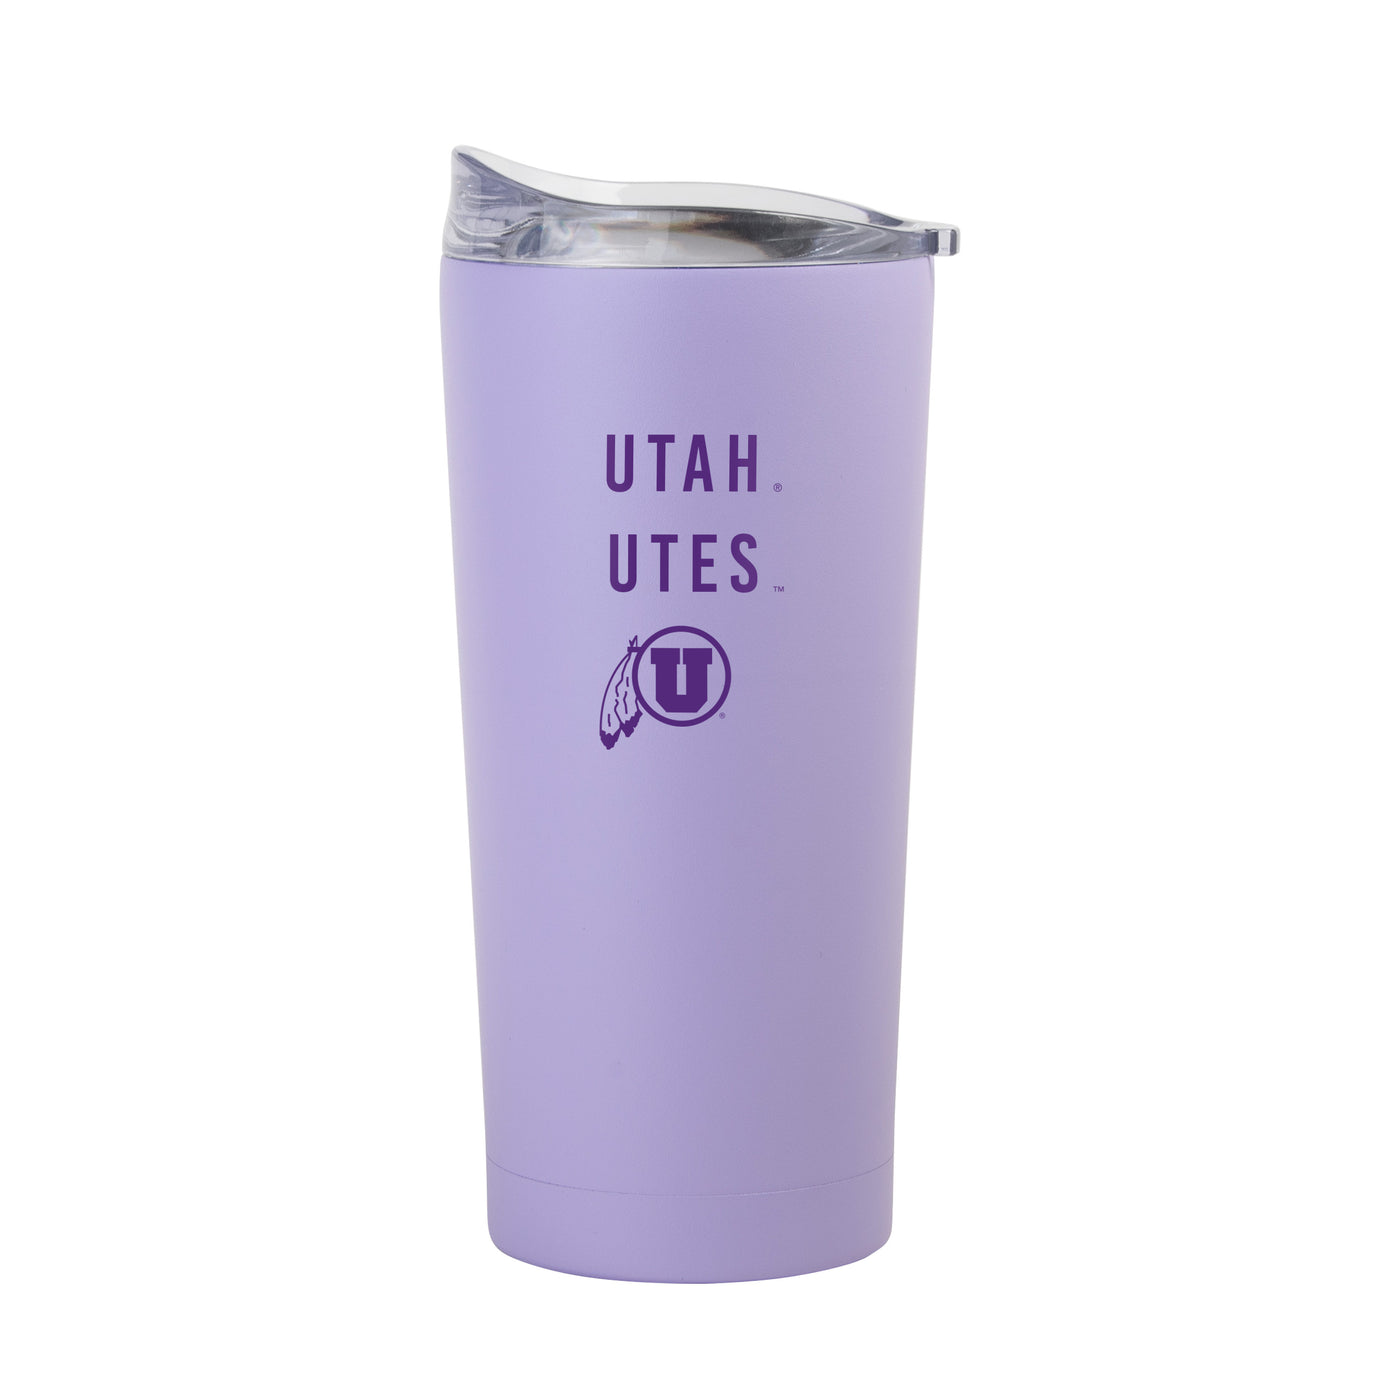 Utah 20oz Tonal Lavender Powder Coat Tumbler